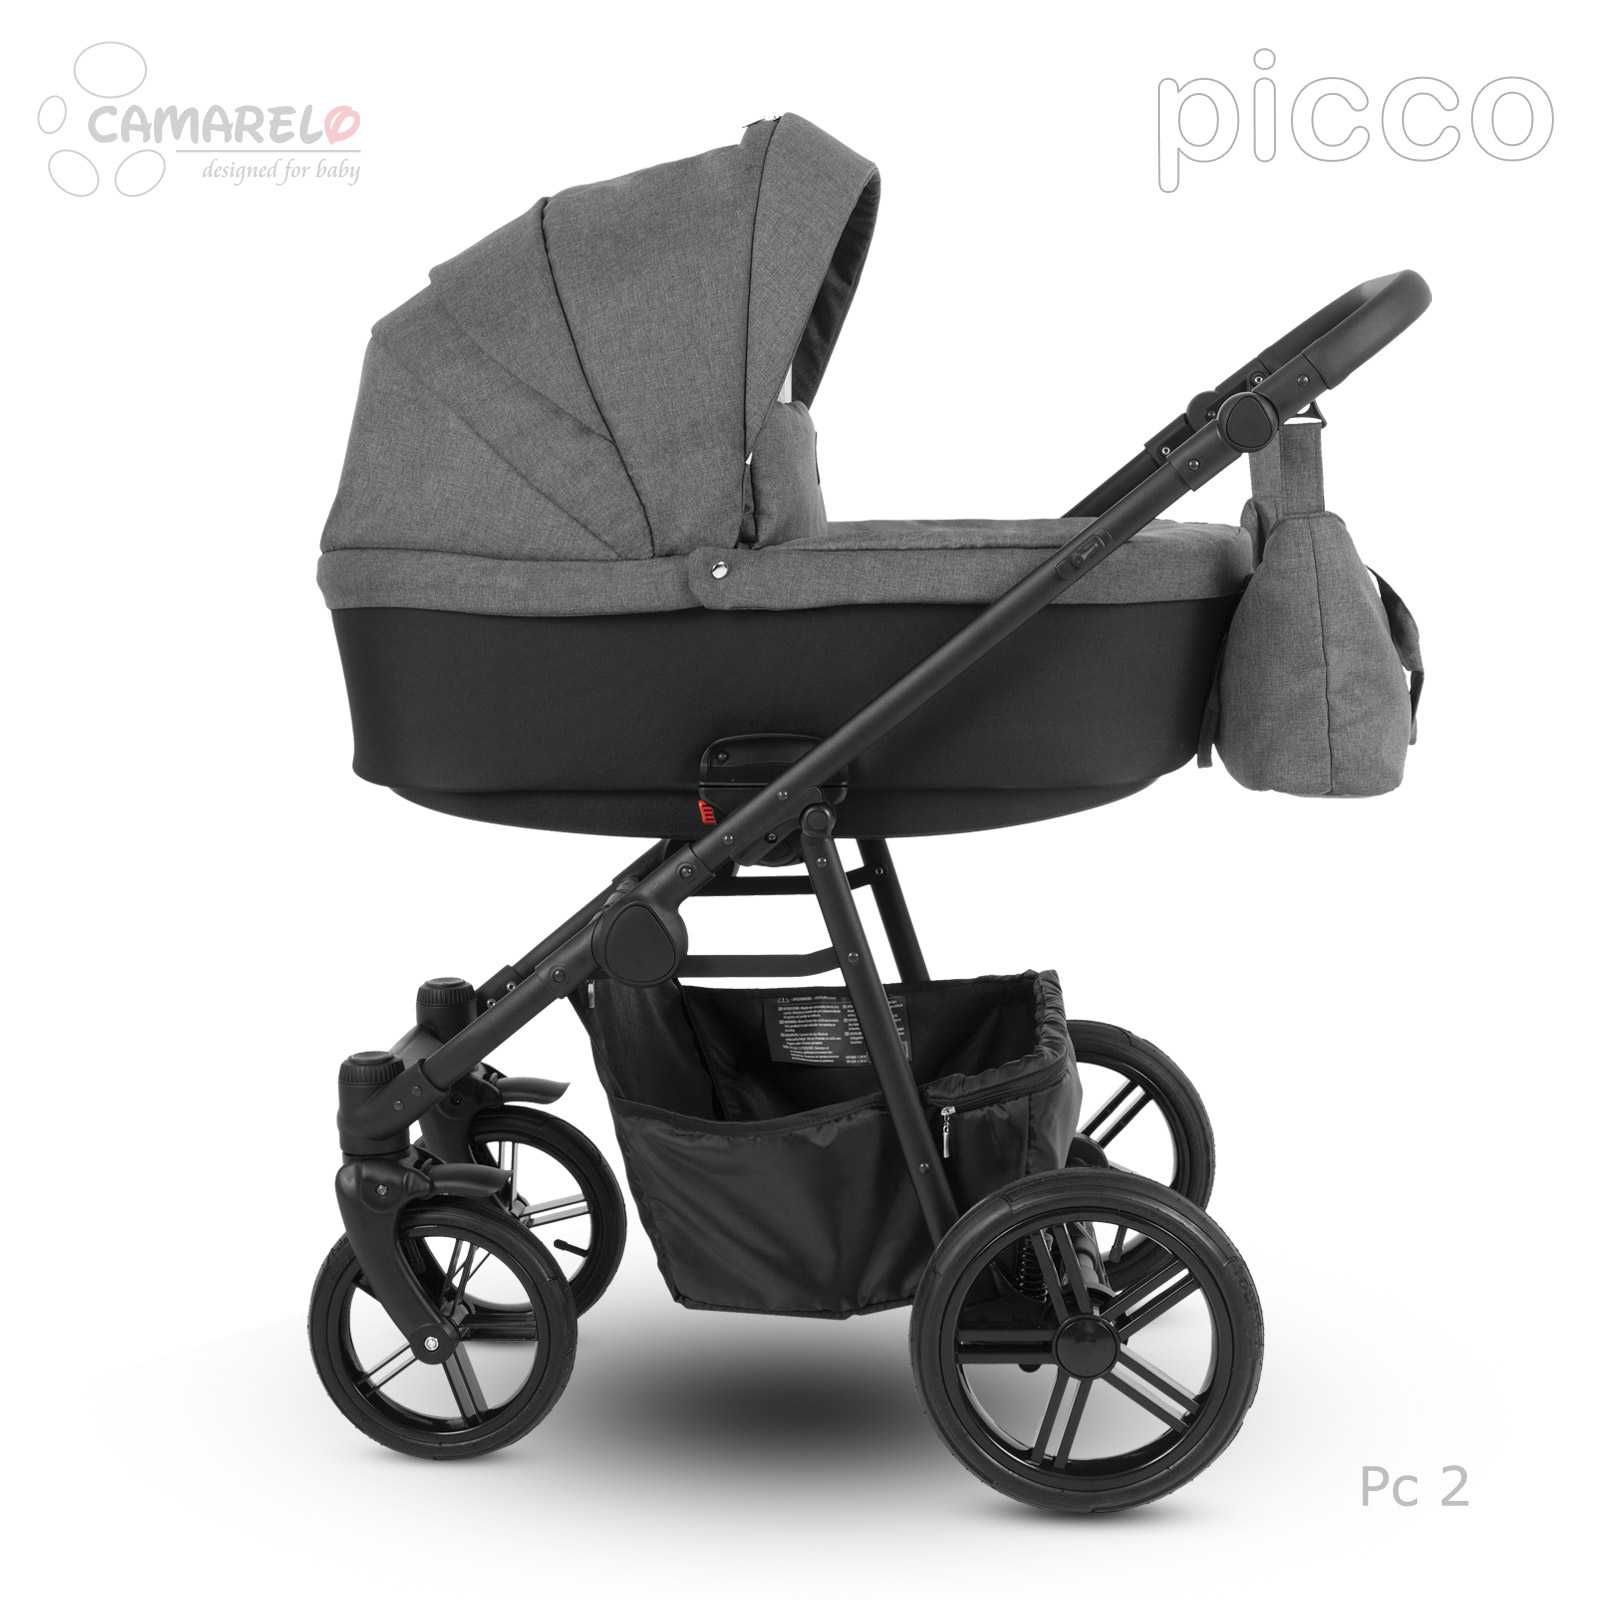 Wózek Camarelo Picco 3w1